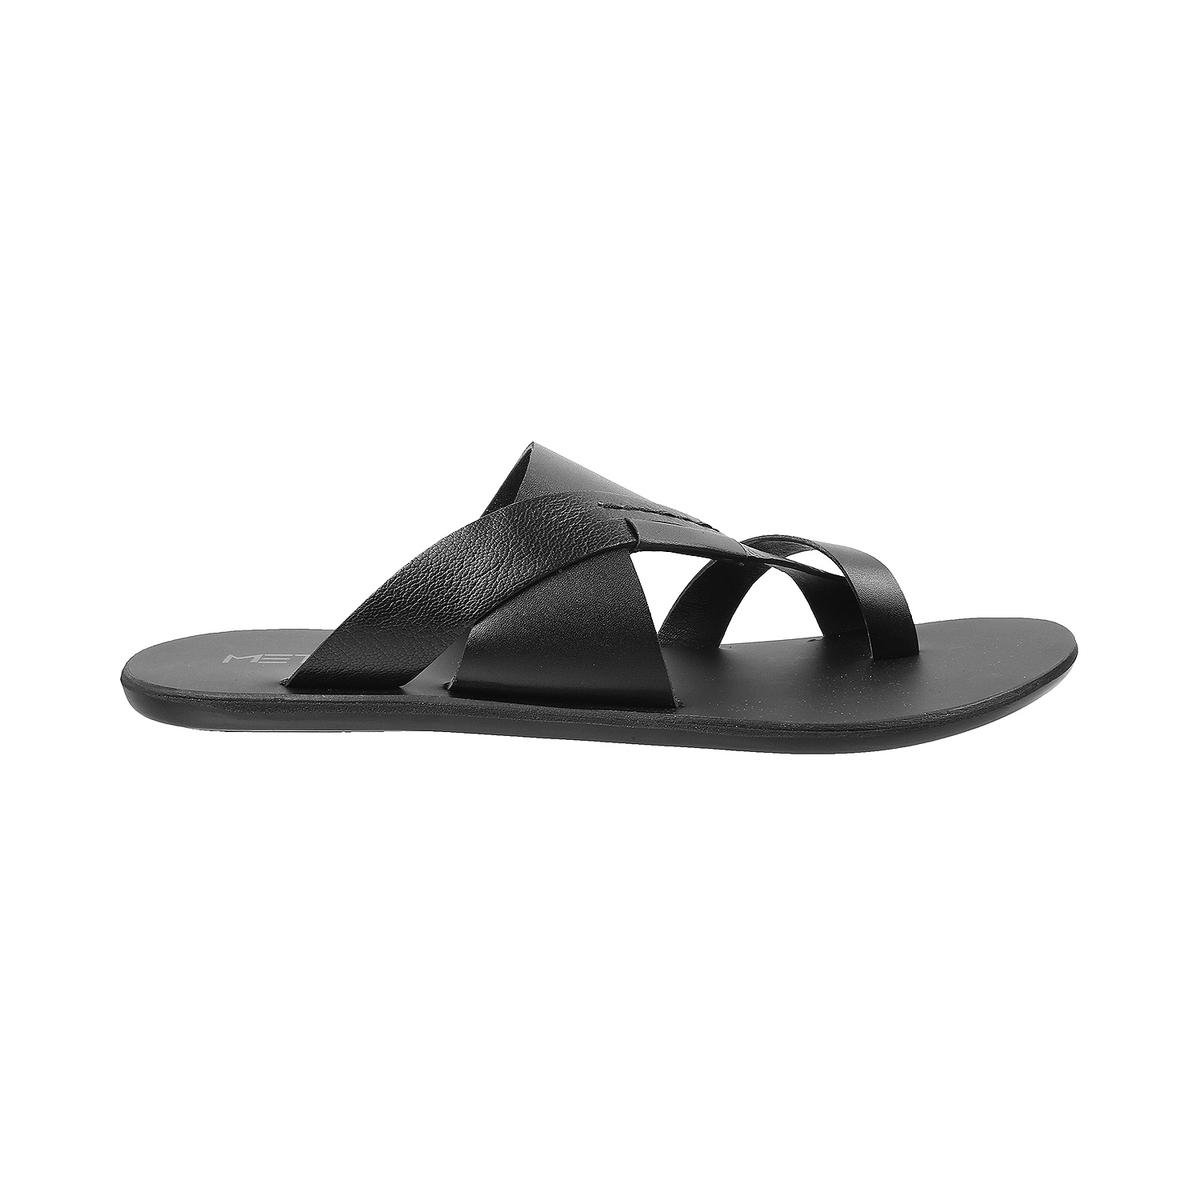 Buy Men Black Casual Slippers Online | SKU: 16-640-11-40-Metro Shoes